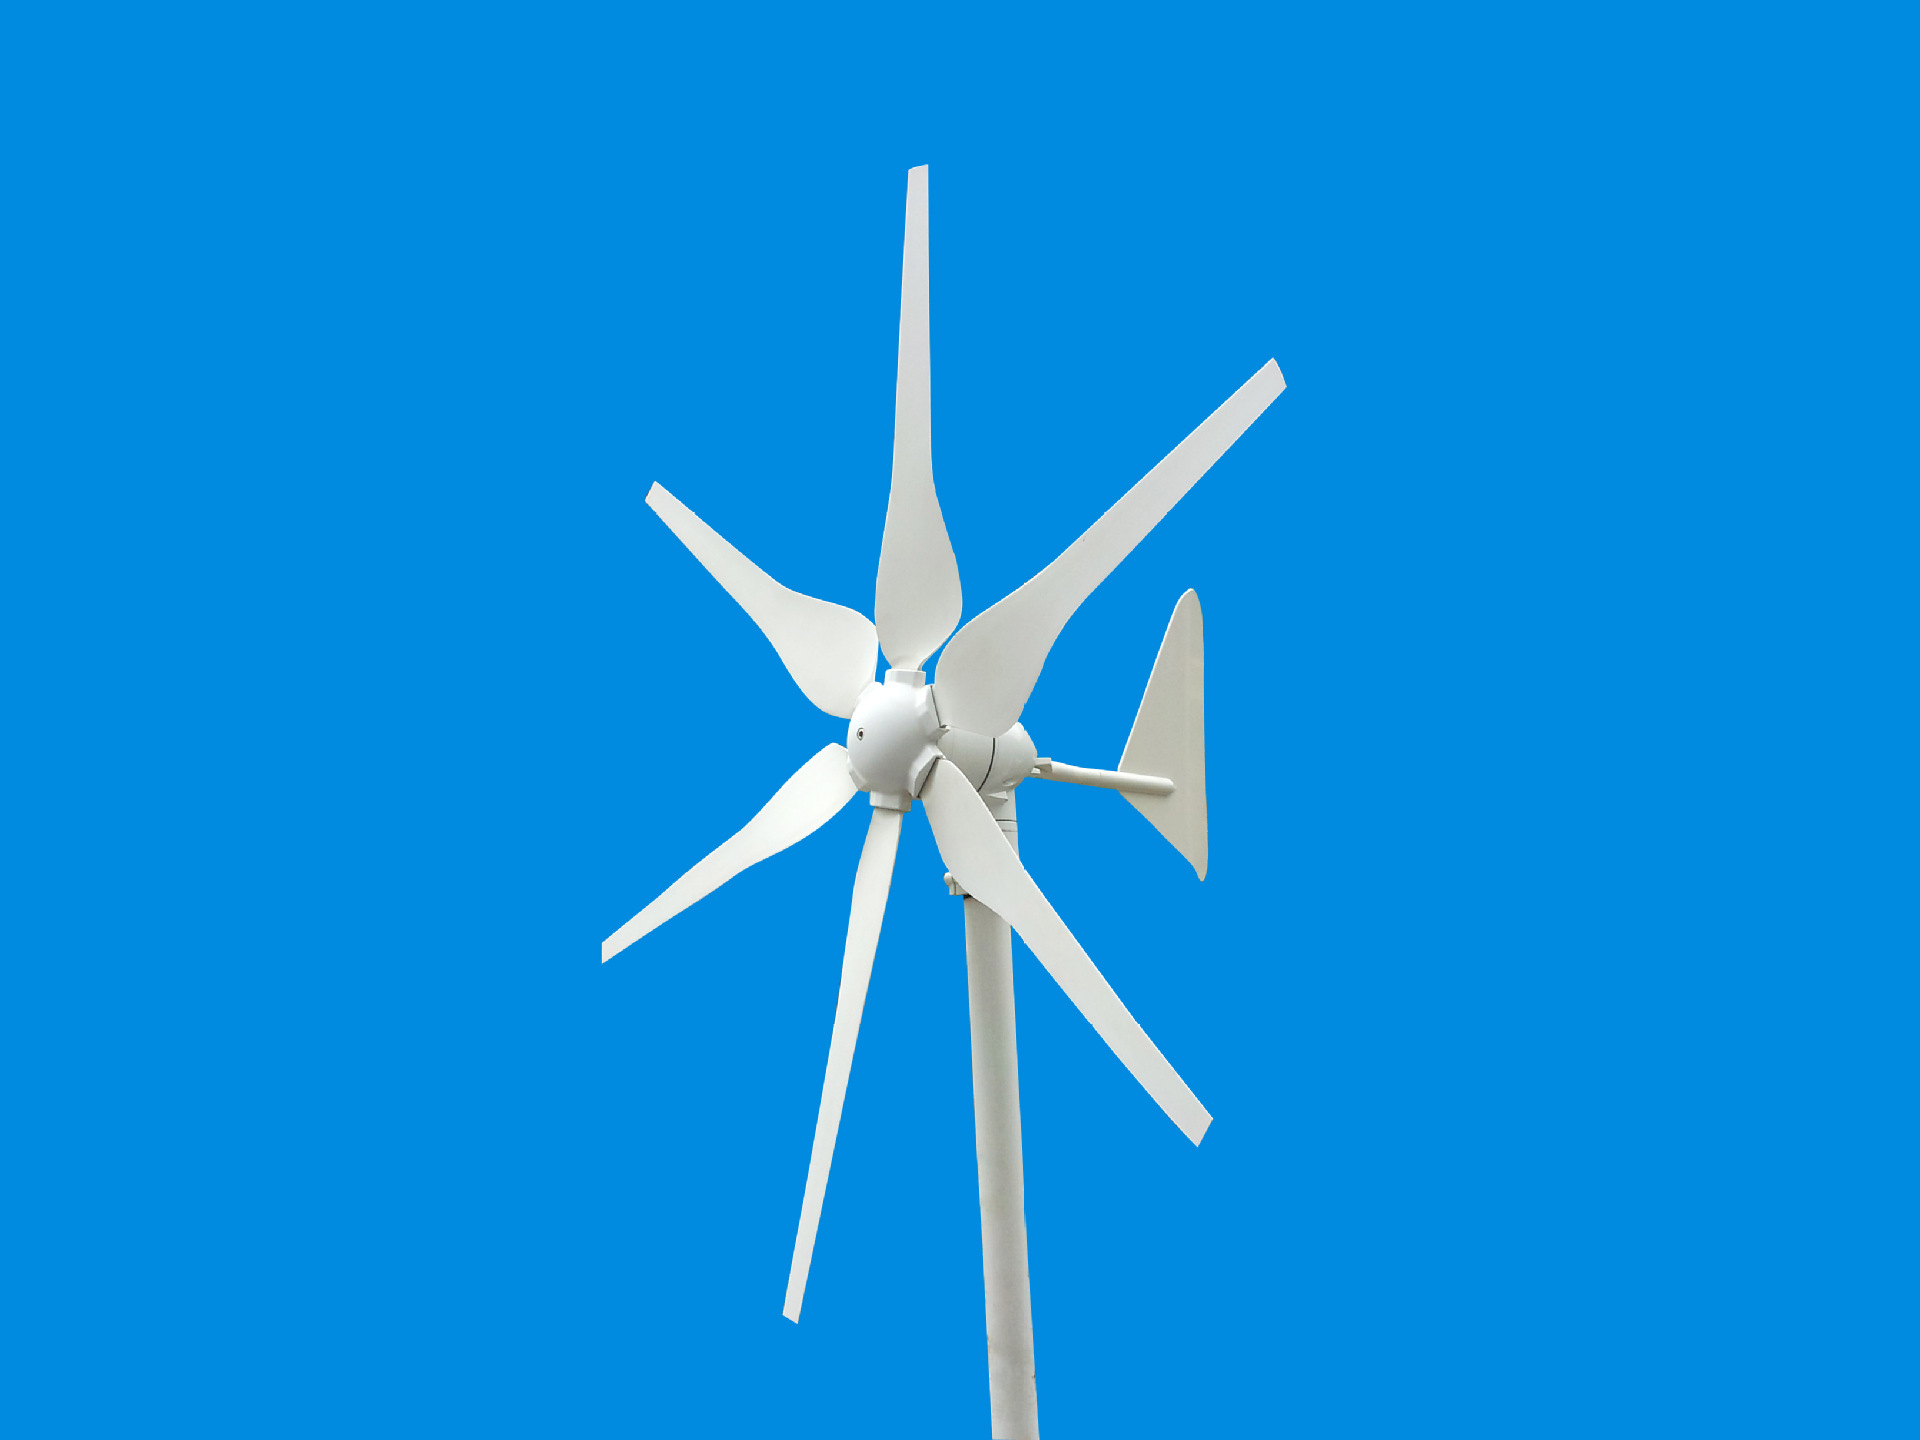 厂家供应300w家用小型风力发电机 6叶片高效率 碳纤维叶片耐腐蚀